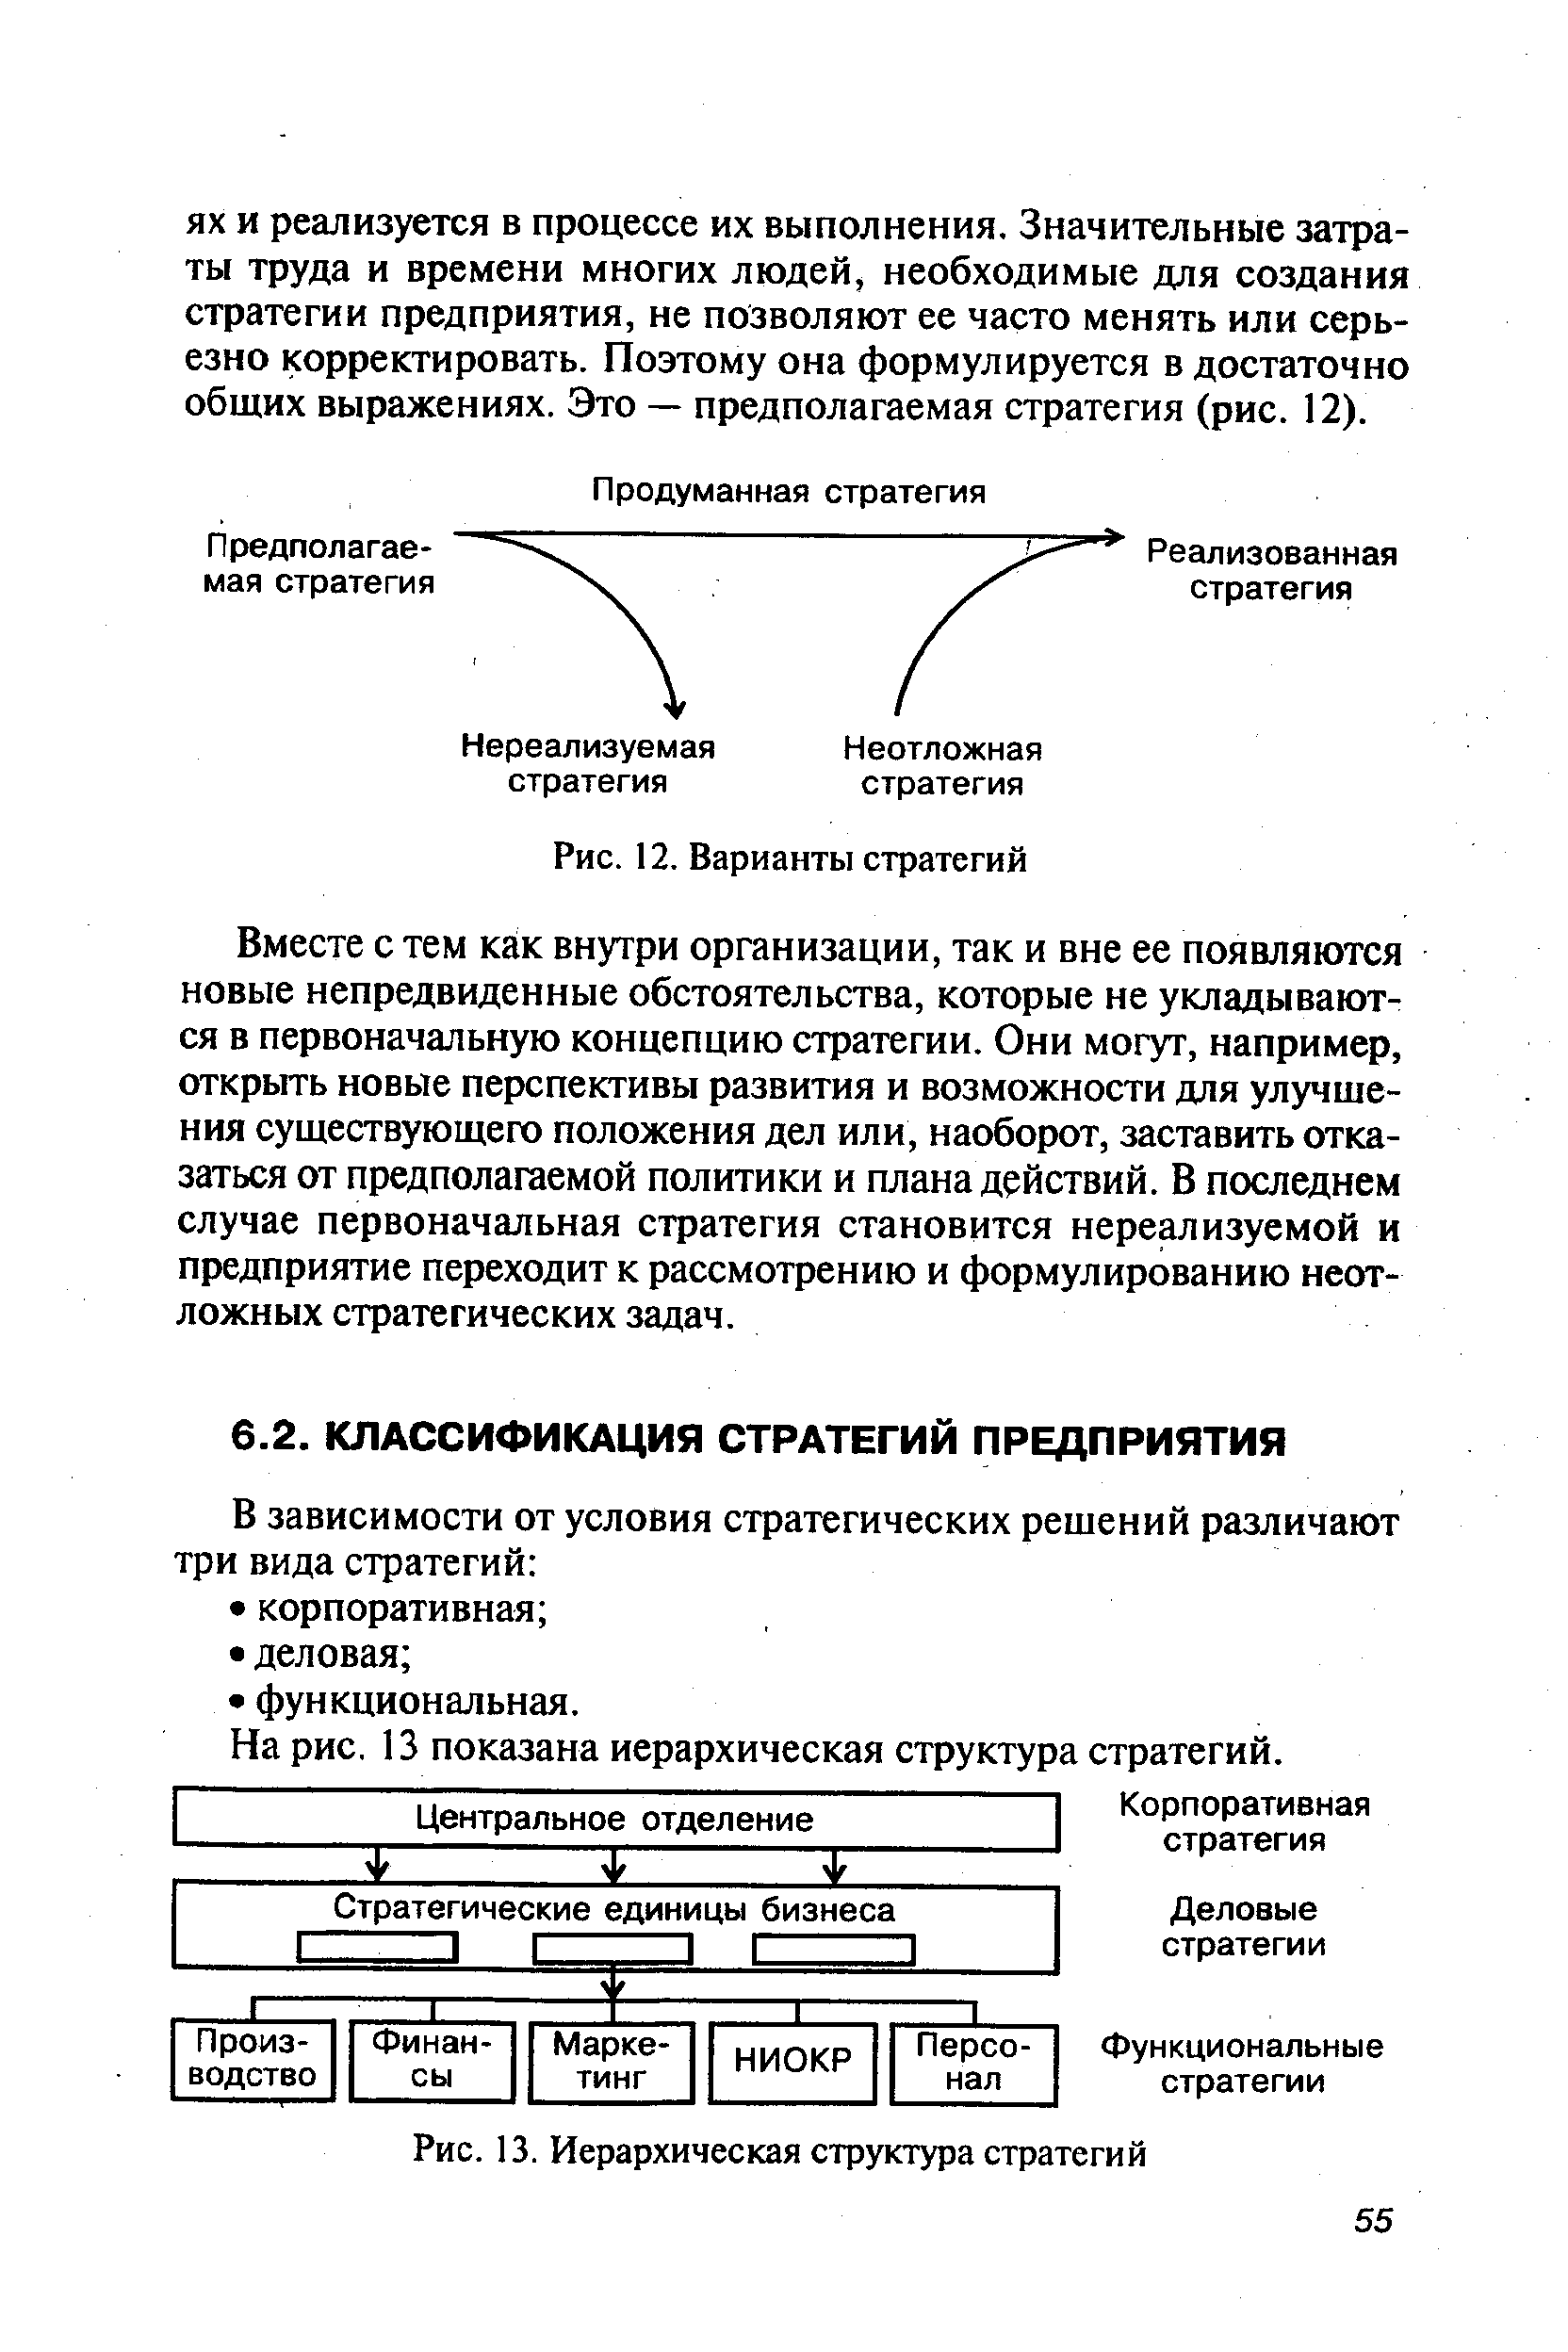 На рис. 13 показана иерархическая структура стратегий.
